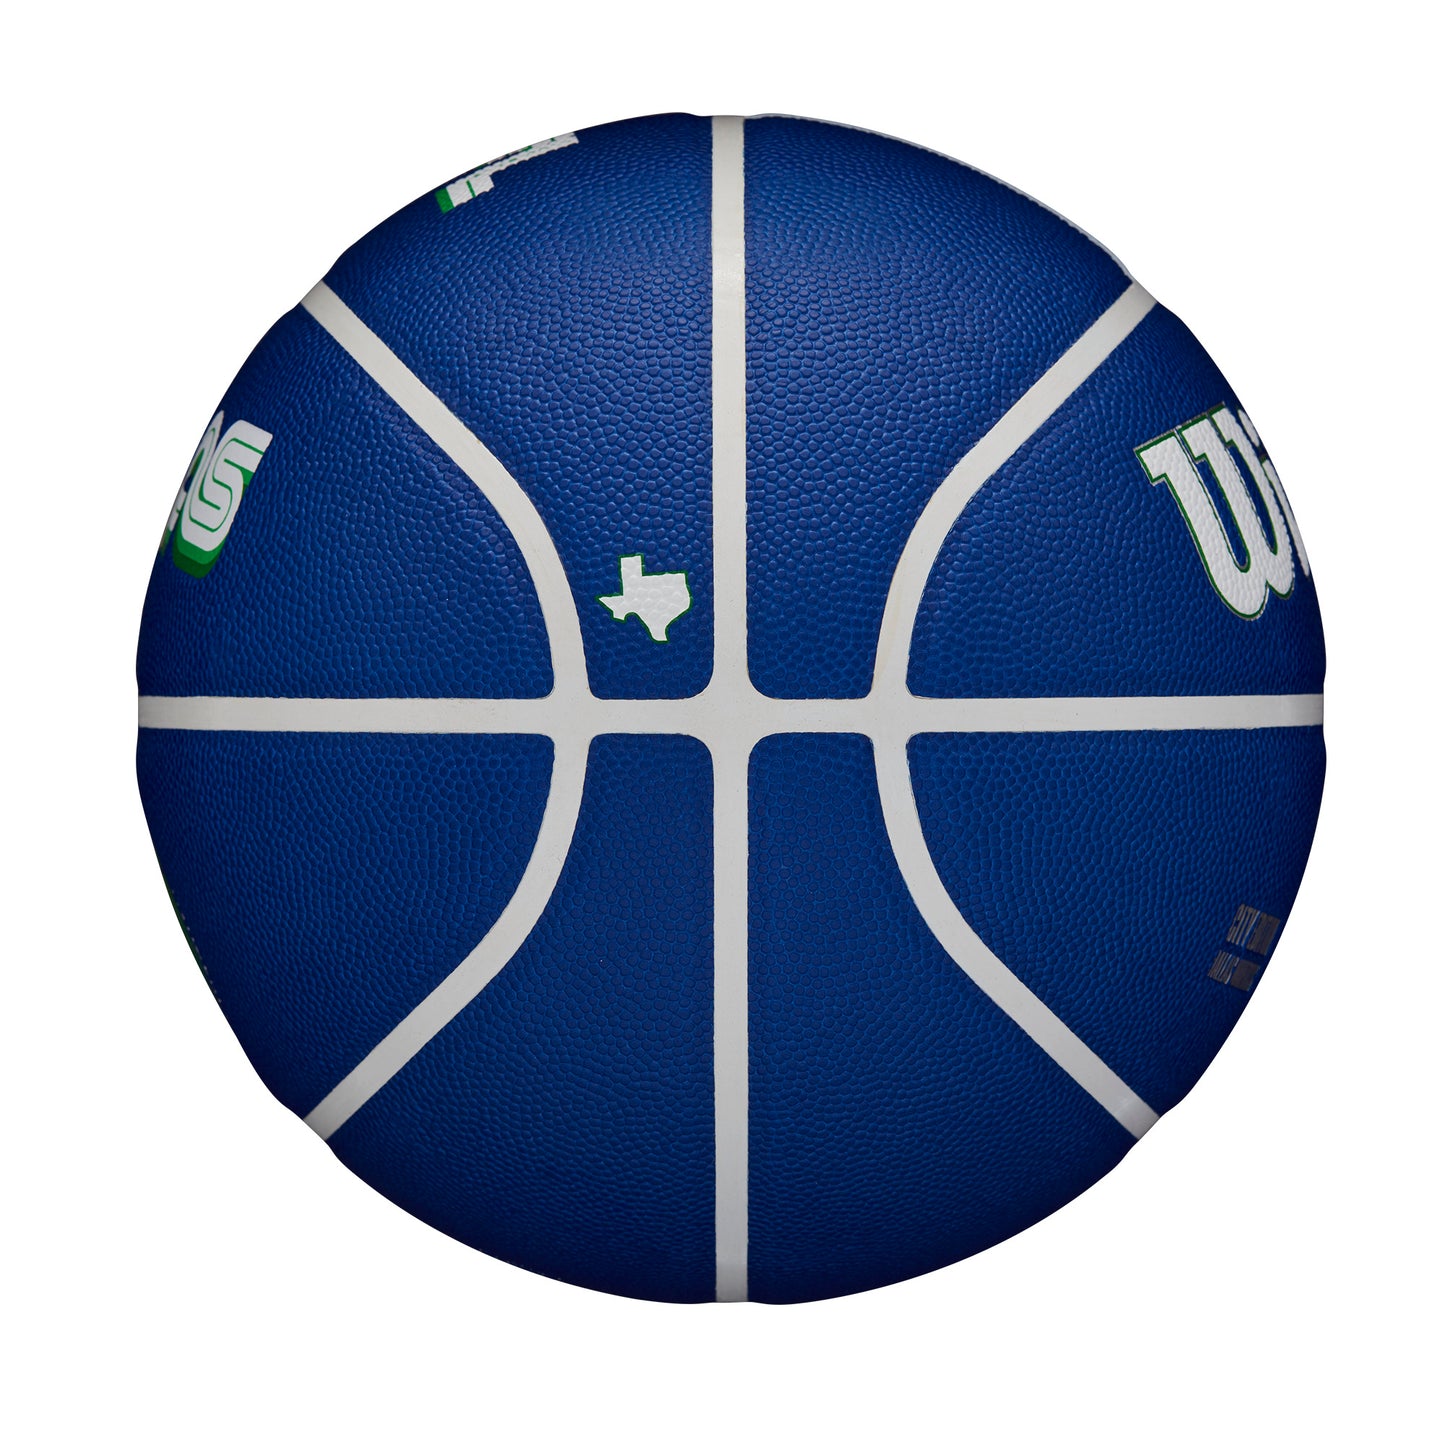 Wilson NBA TEAM CITY COLLECTOR BASKETBALL DALLAS MAVERICKS Blue WZ4016407XB